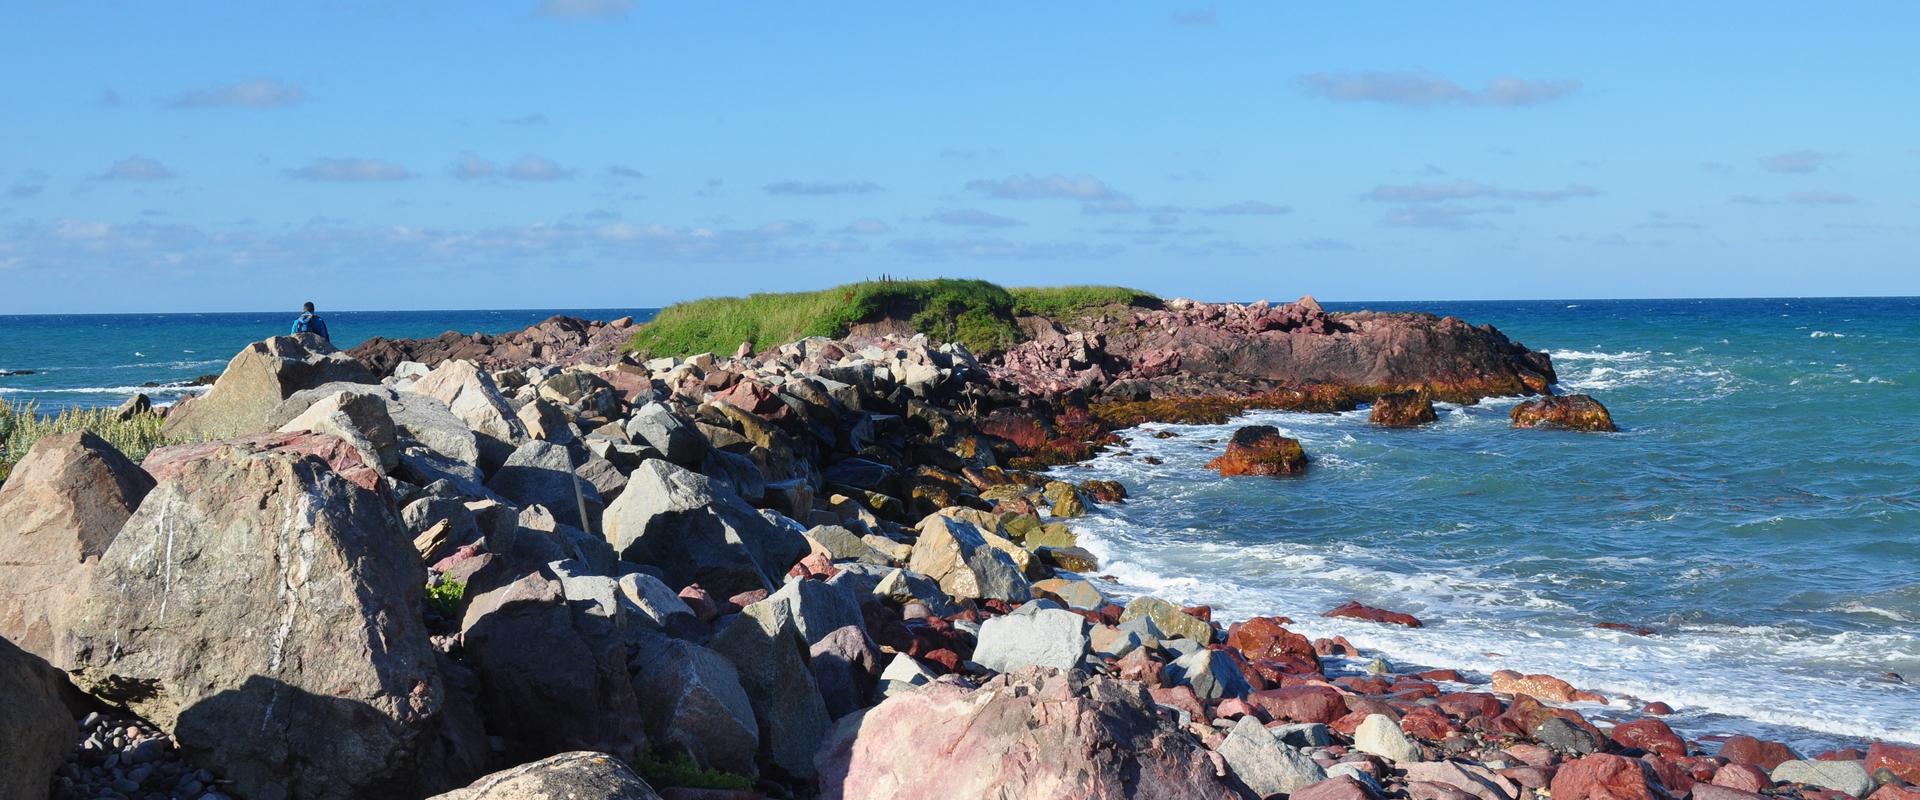 Ignimbrites rouges de la Pointe à Cheval, Sainy Pierre et Miquelon